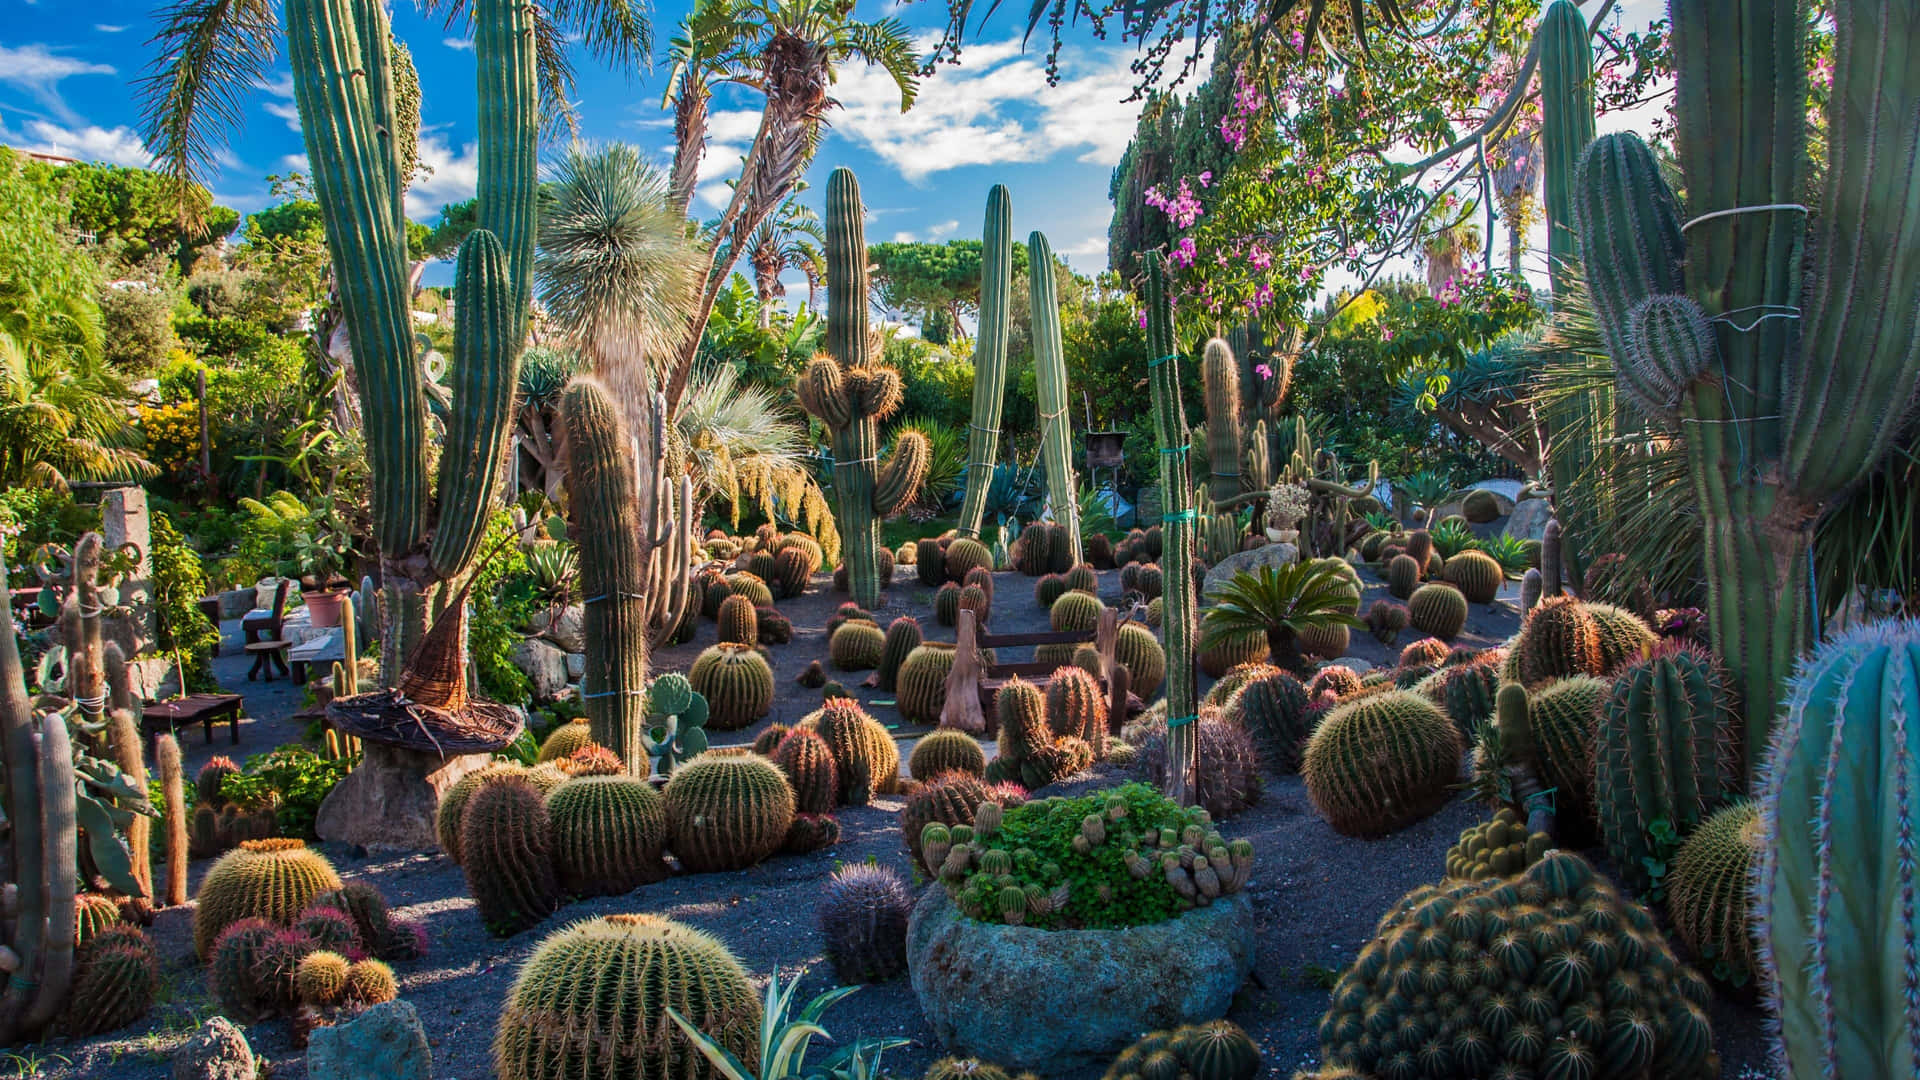 Følkraften Fra Naturen Med Dette Fantastiske Kaktus-baggrundsbillede.